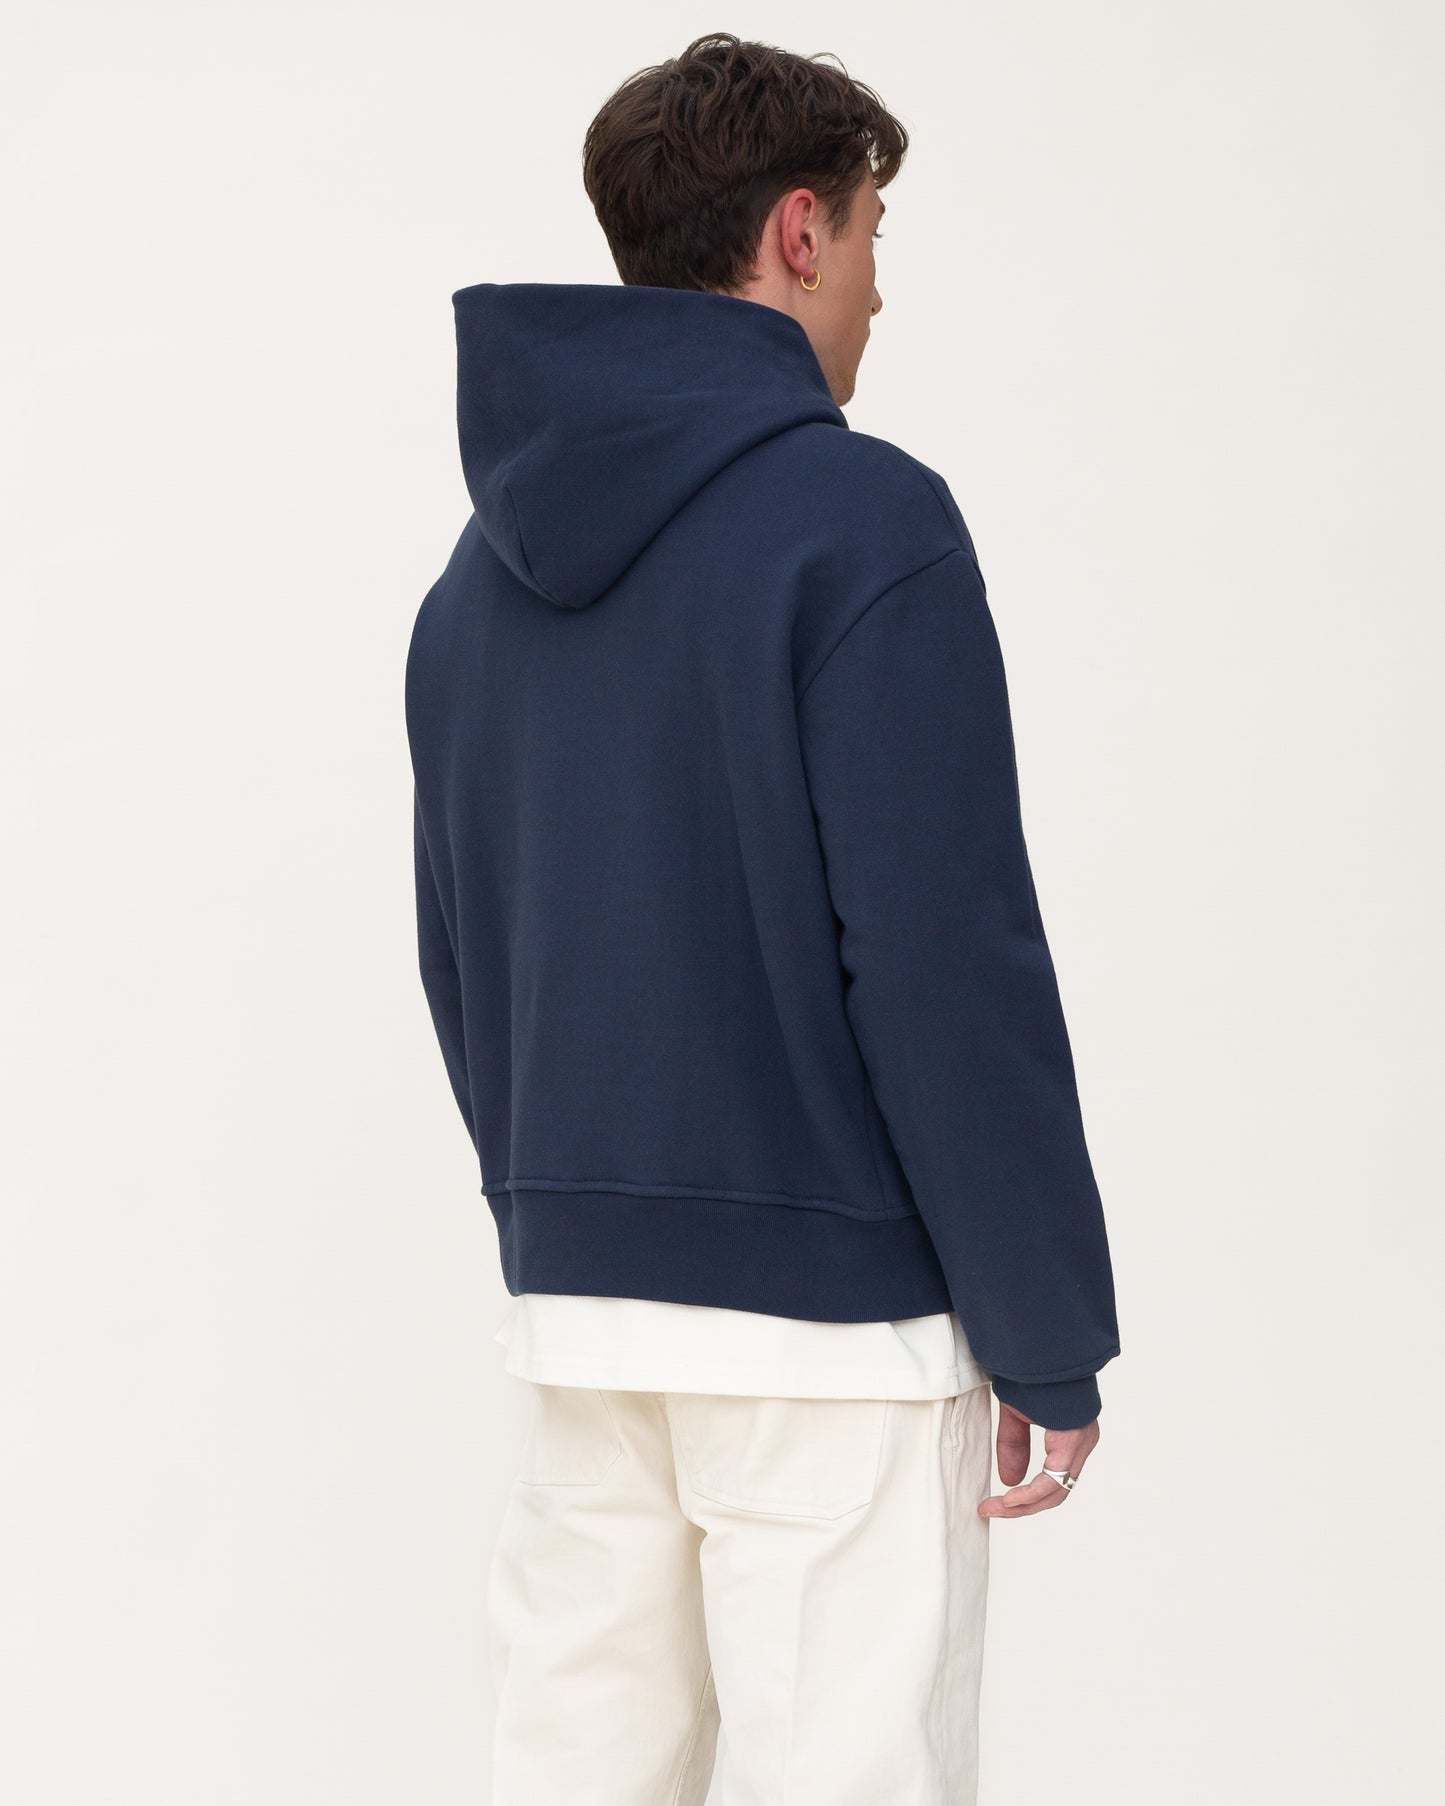 zip up hoodies, navy hoodie, mens hoodie, back side